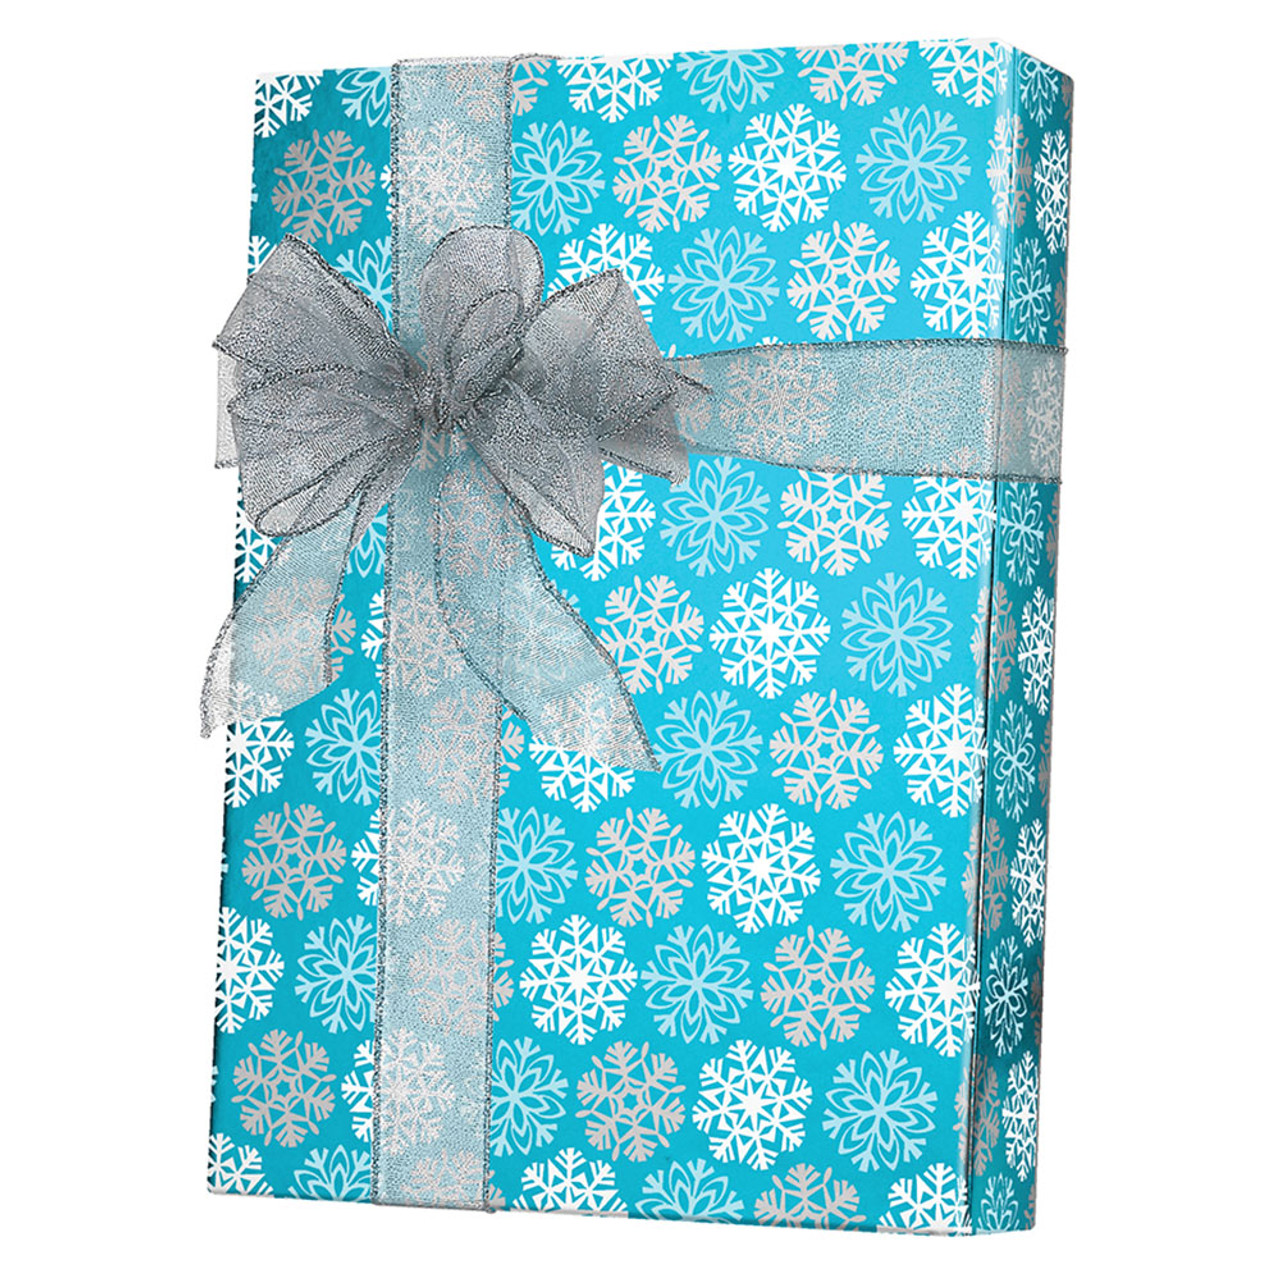 24" x 833' Snowflakes Gift Wrap